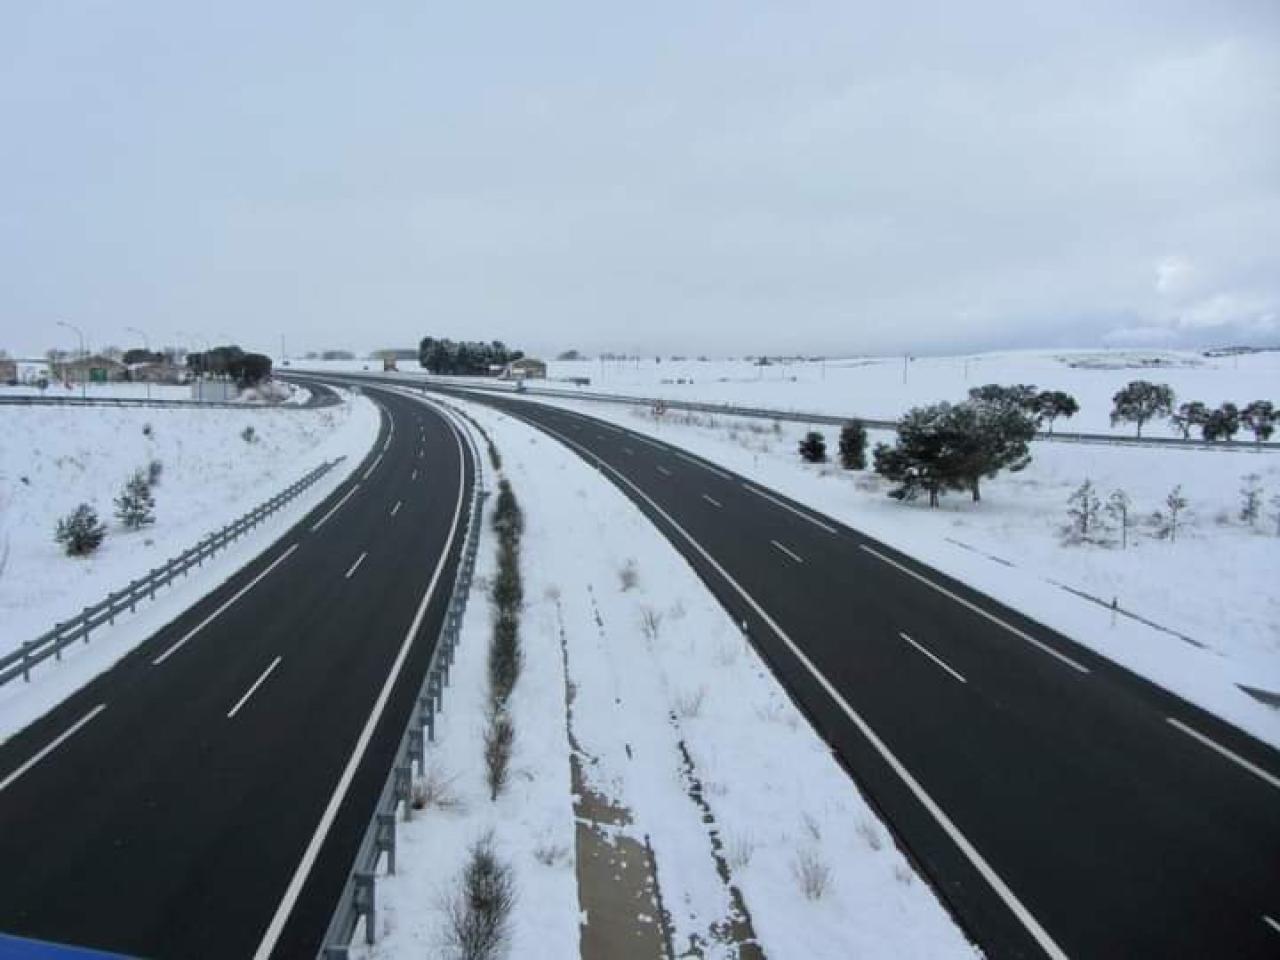 El delegado del Gobierno en Castilla-La Mancha eleva la alerta del protocolo regional de vialidad invernal a “preemergencia”